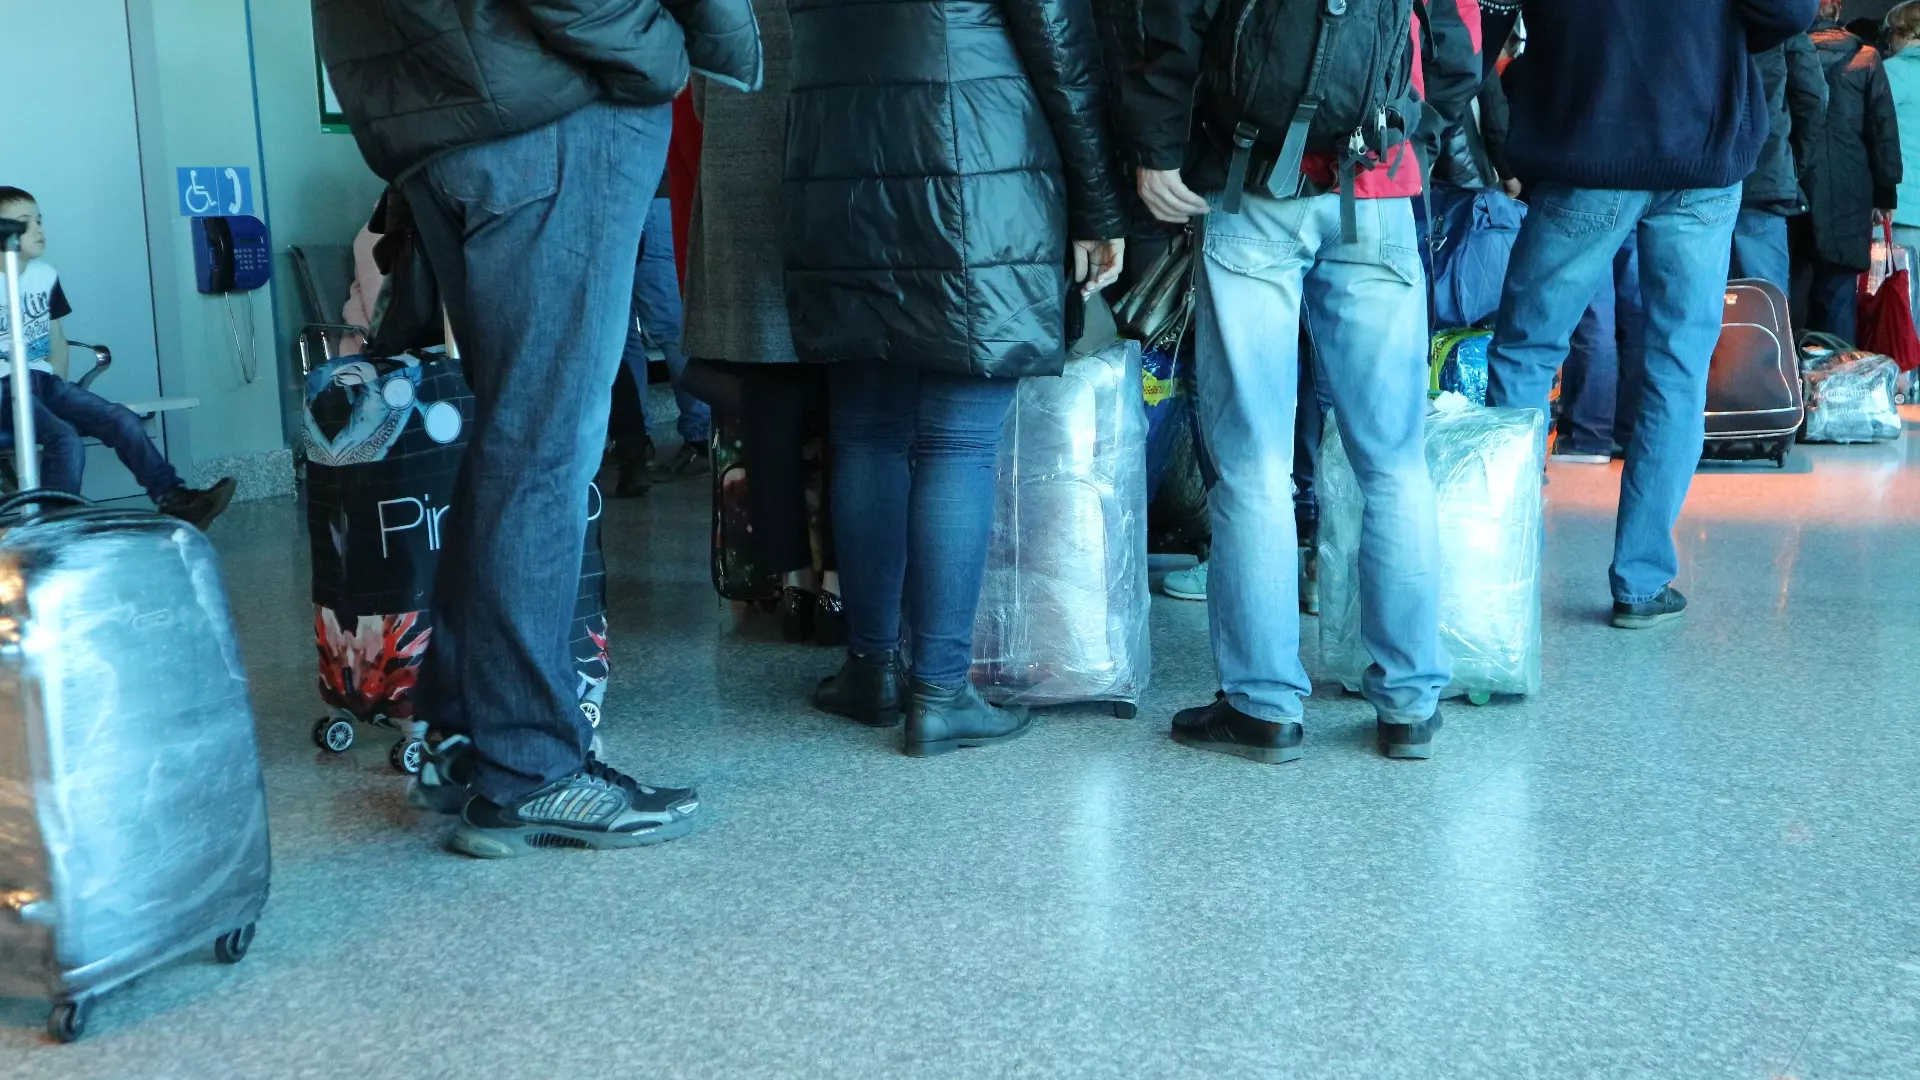 Аэропорт Ямала бесплатно обслужит семьи жертв теракта в бизнес-залах